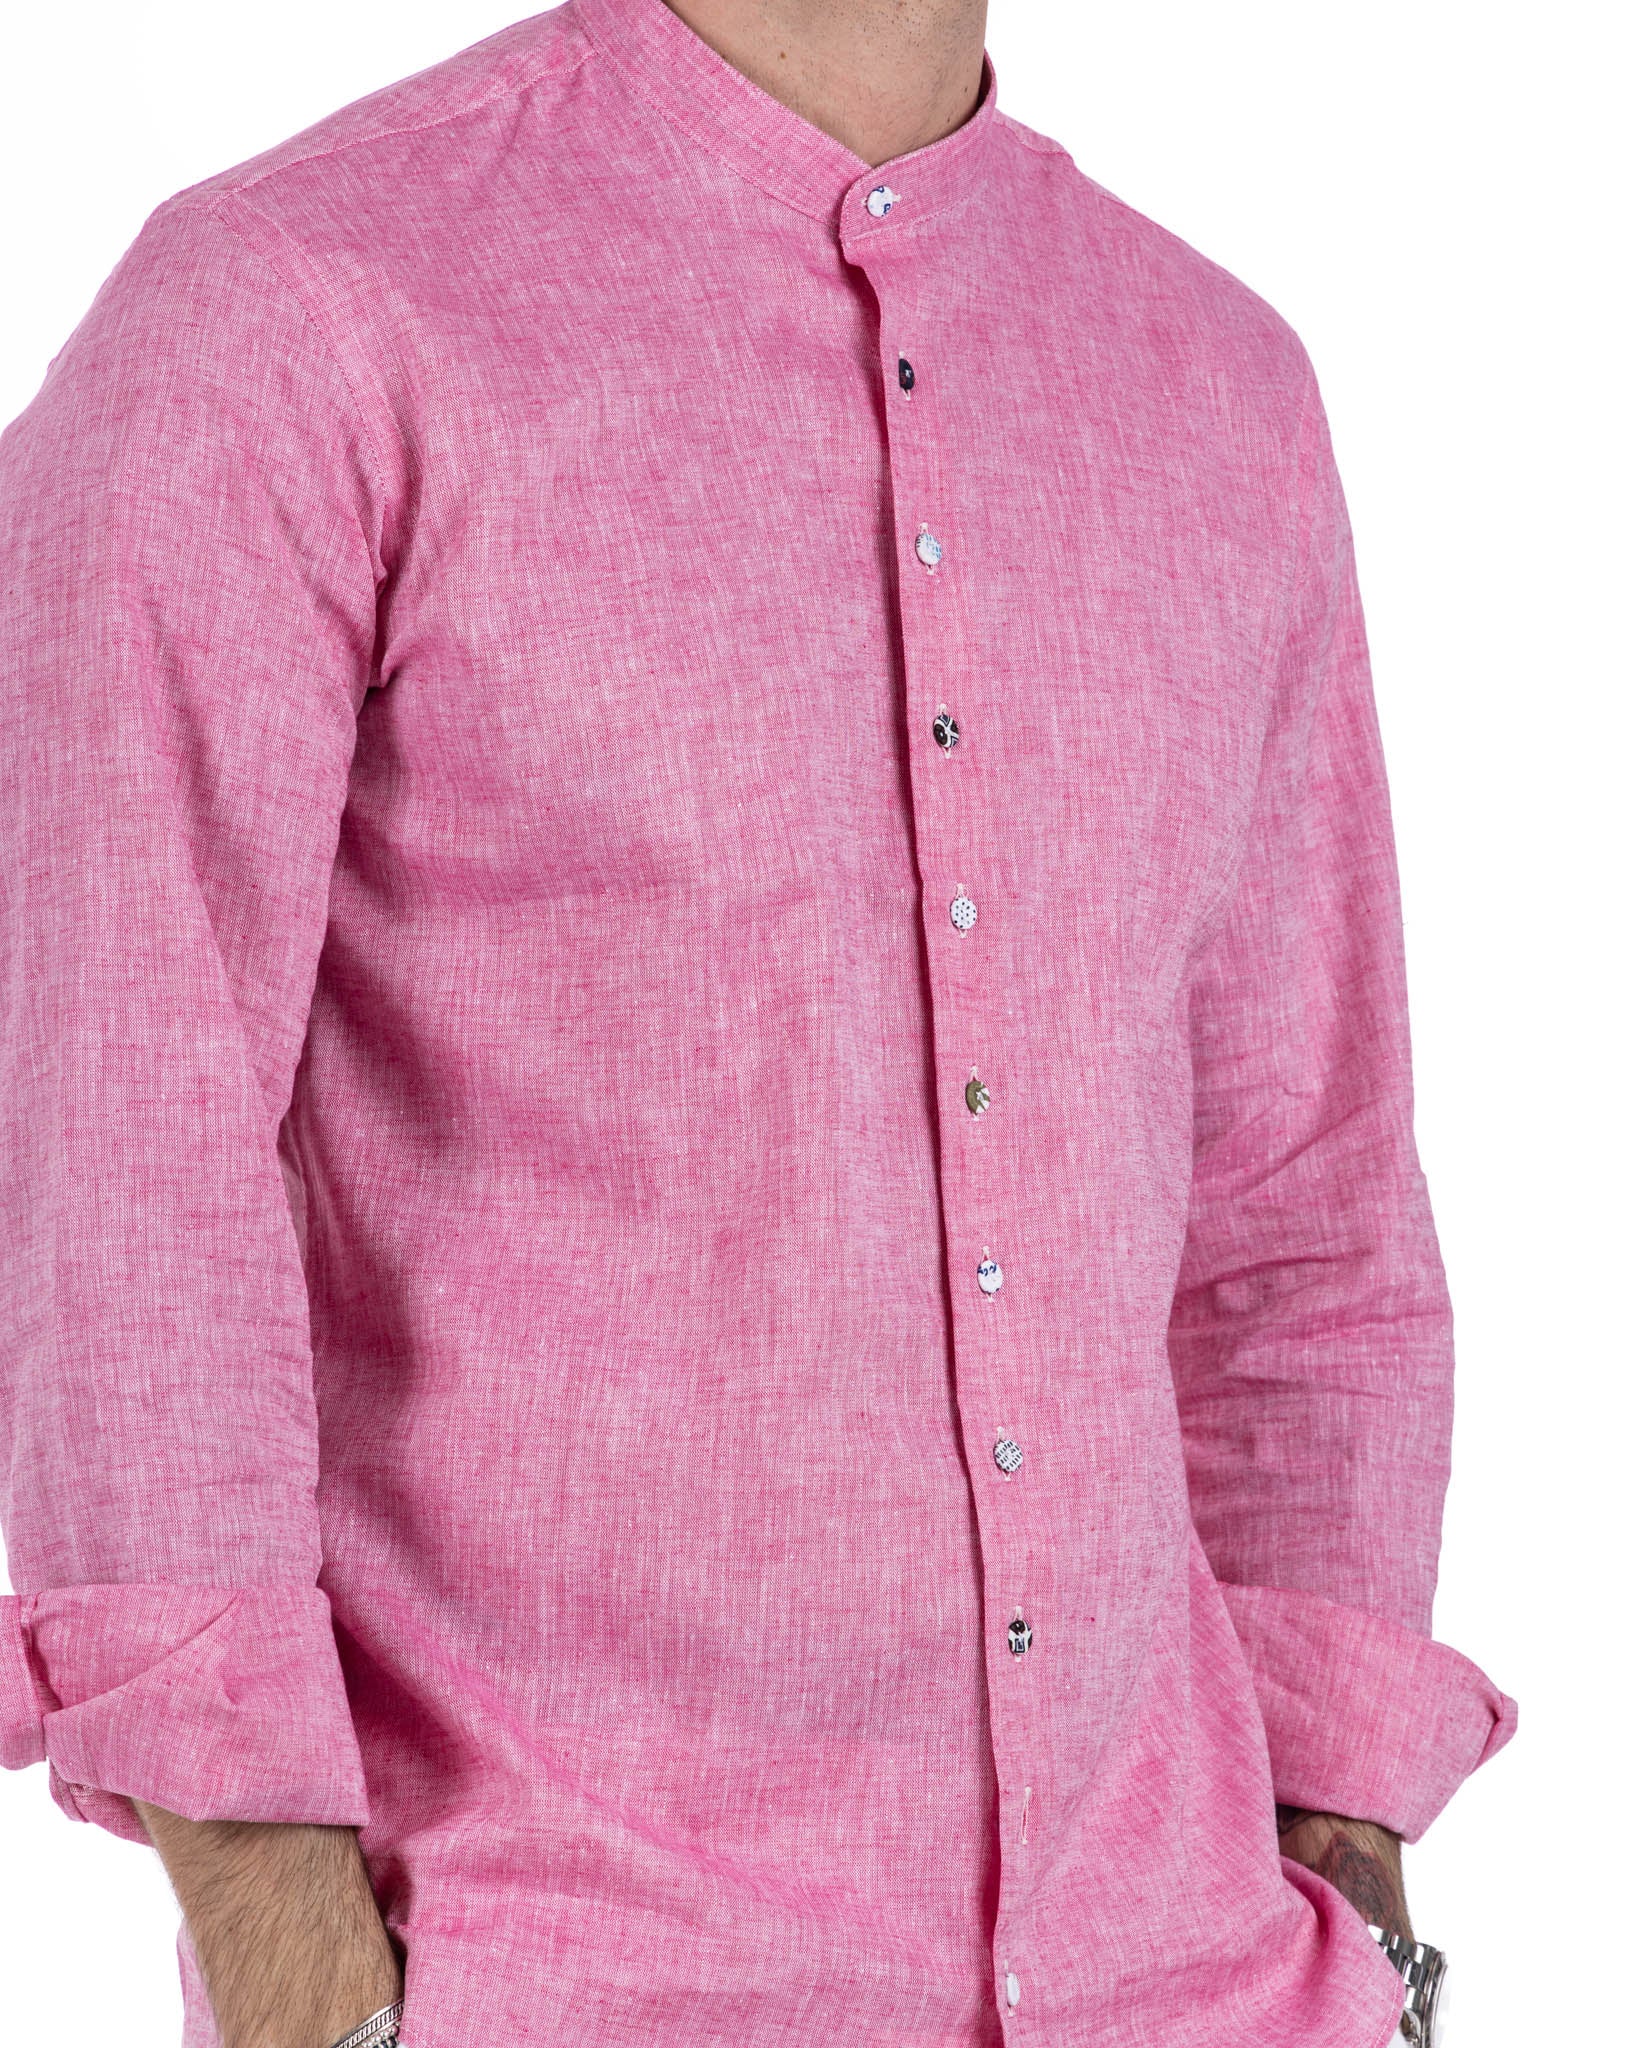 Positano - chemise coréenne en lin fuchsia